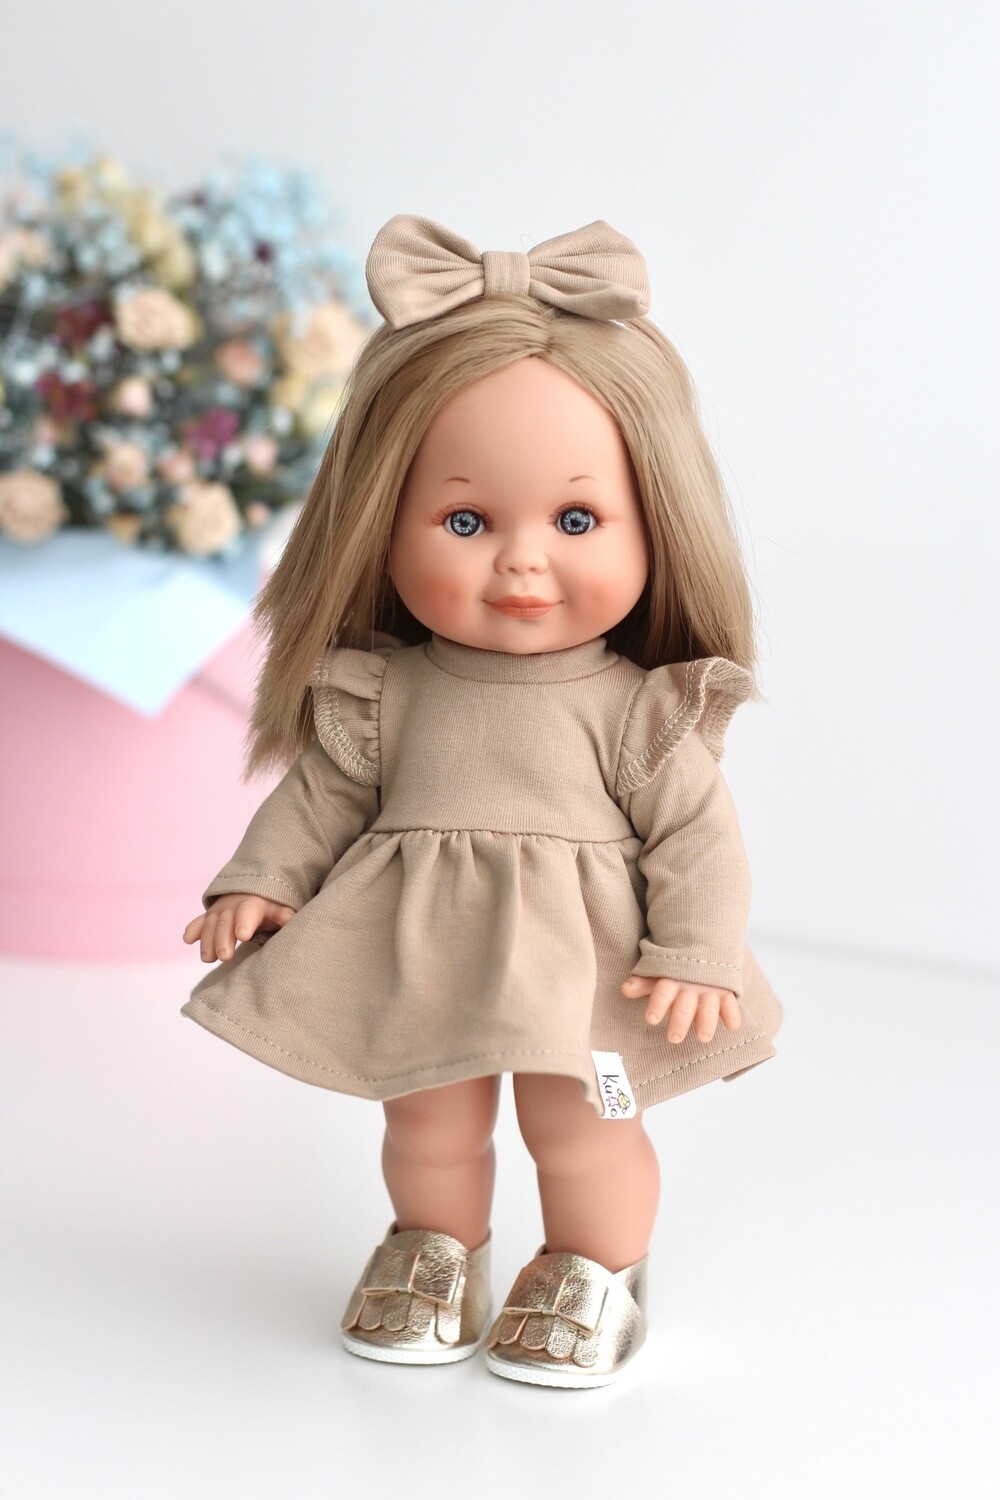 Кукла Бетти с ароматом карамели, со средней длиной волос, в платье с бантиком, 30 см, Lamagik